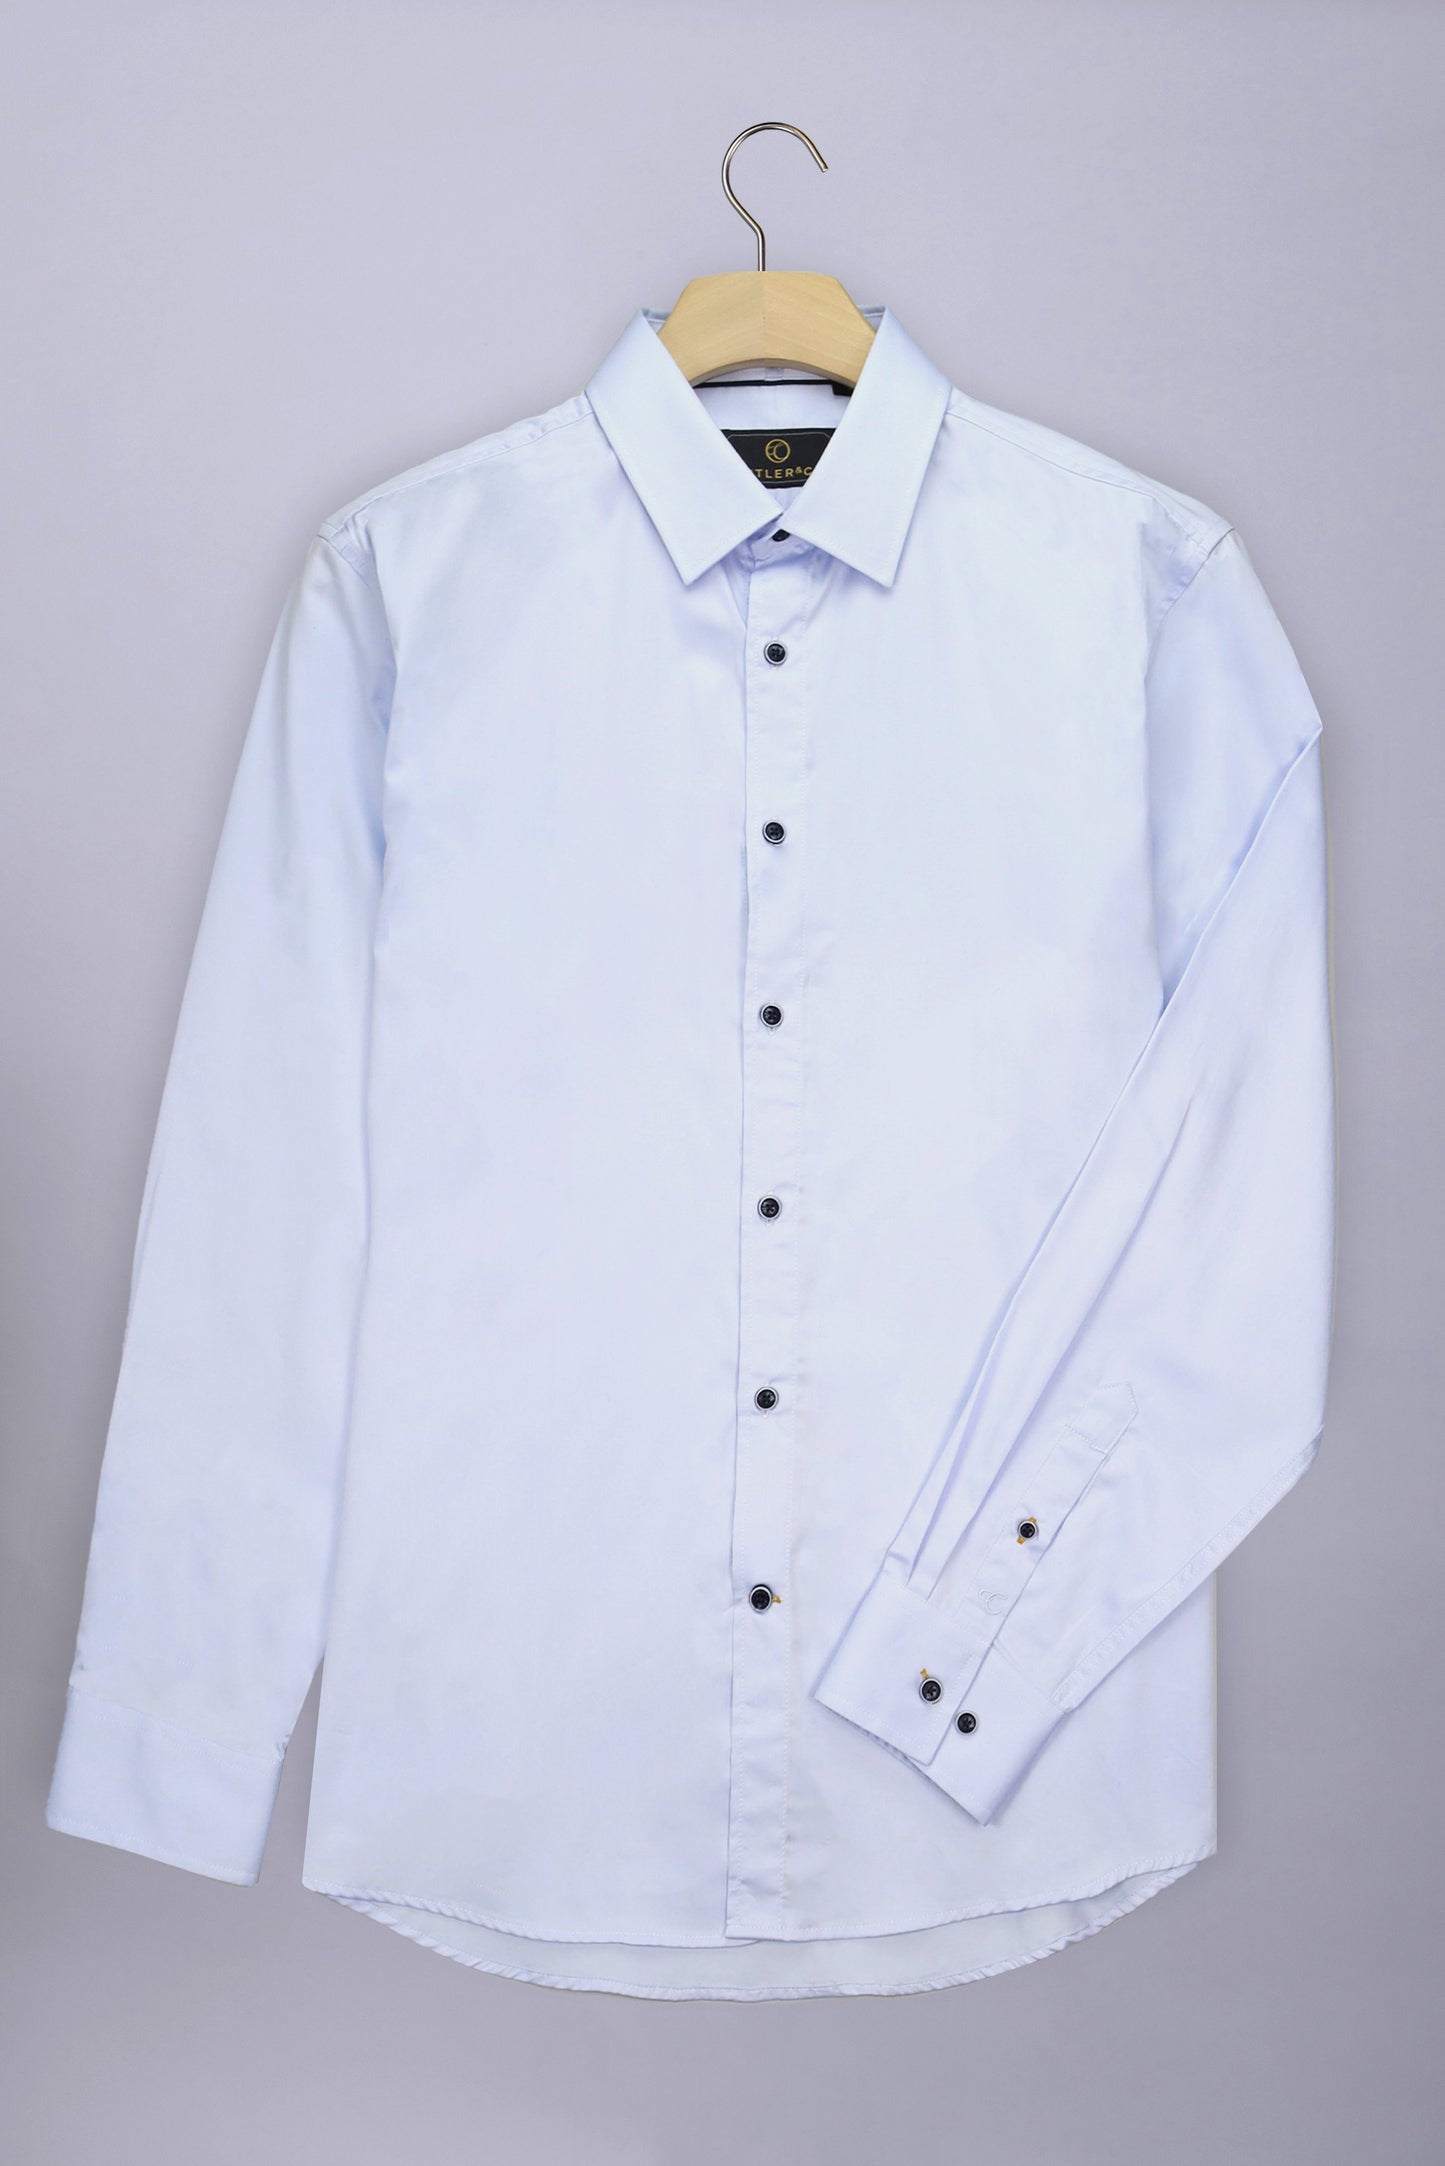 Cutler & Co - Blaine Shirt - Pale Blue